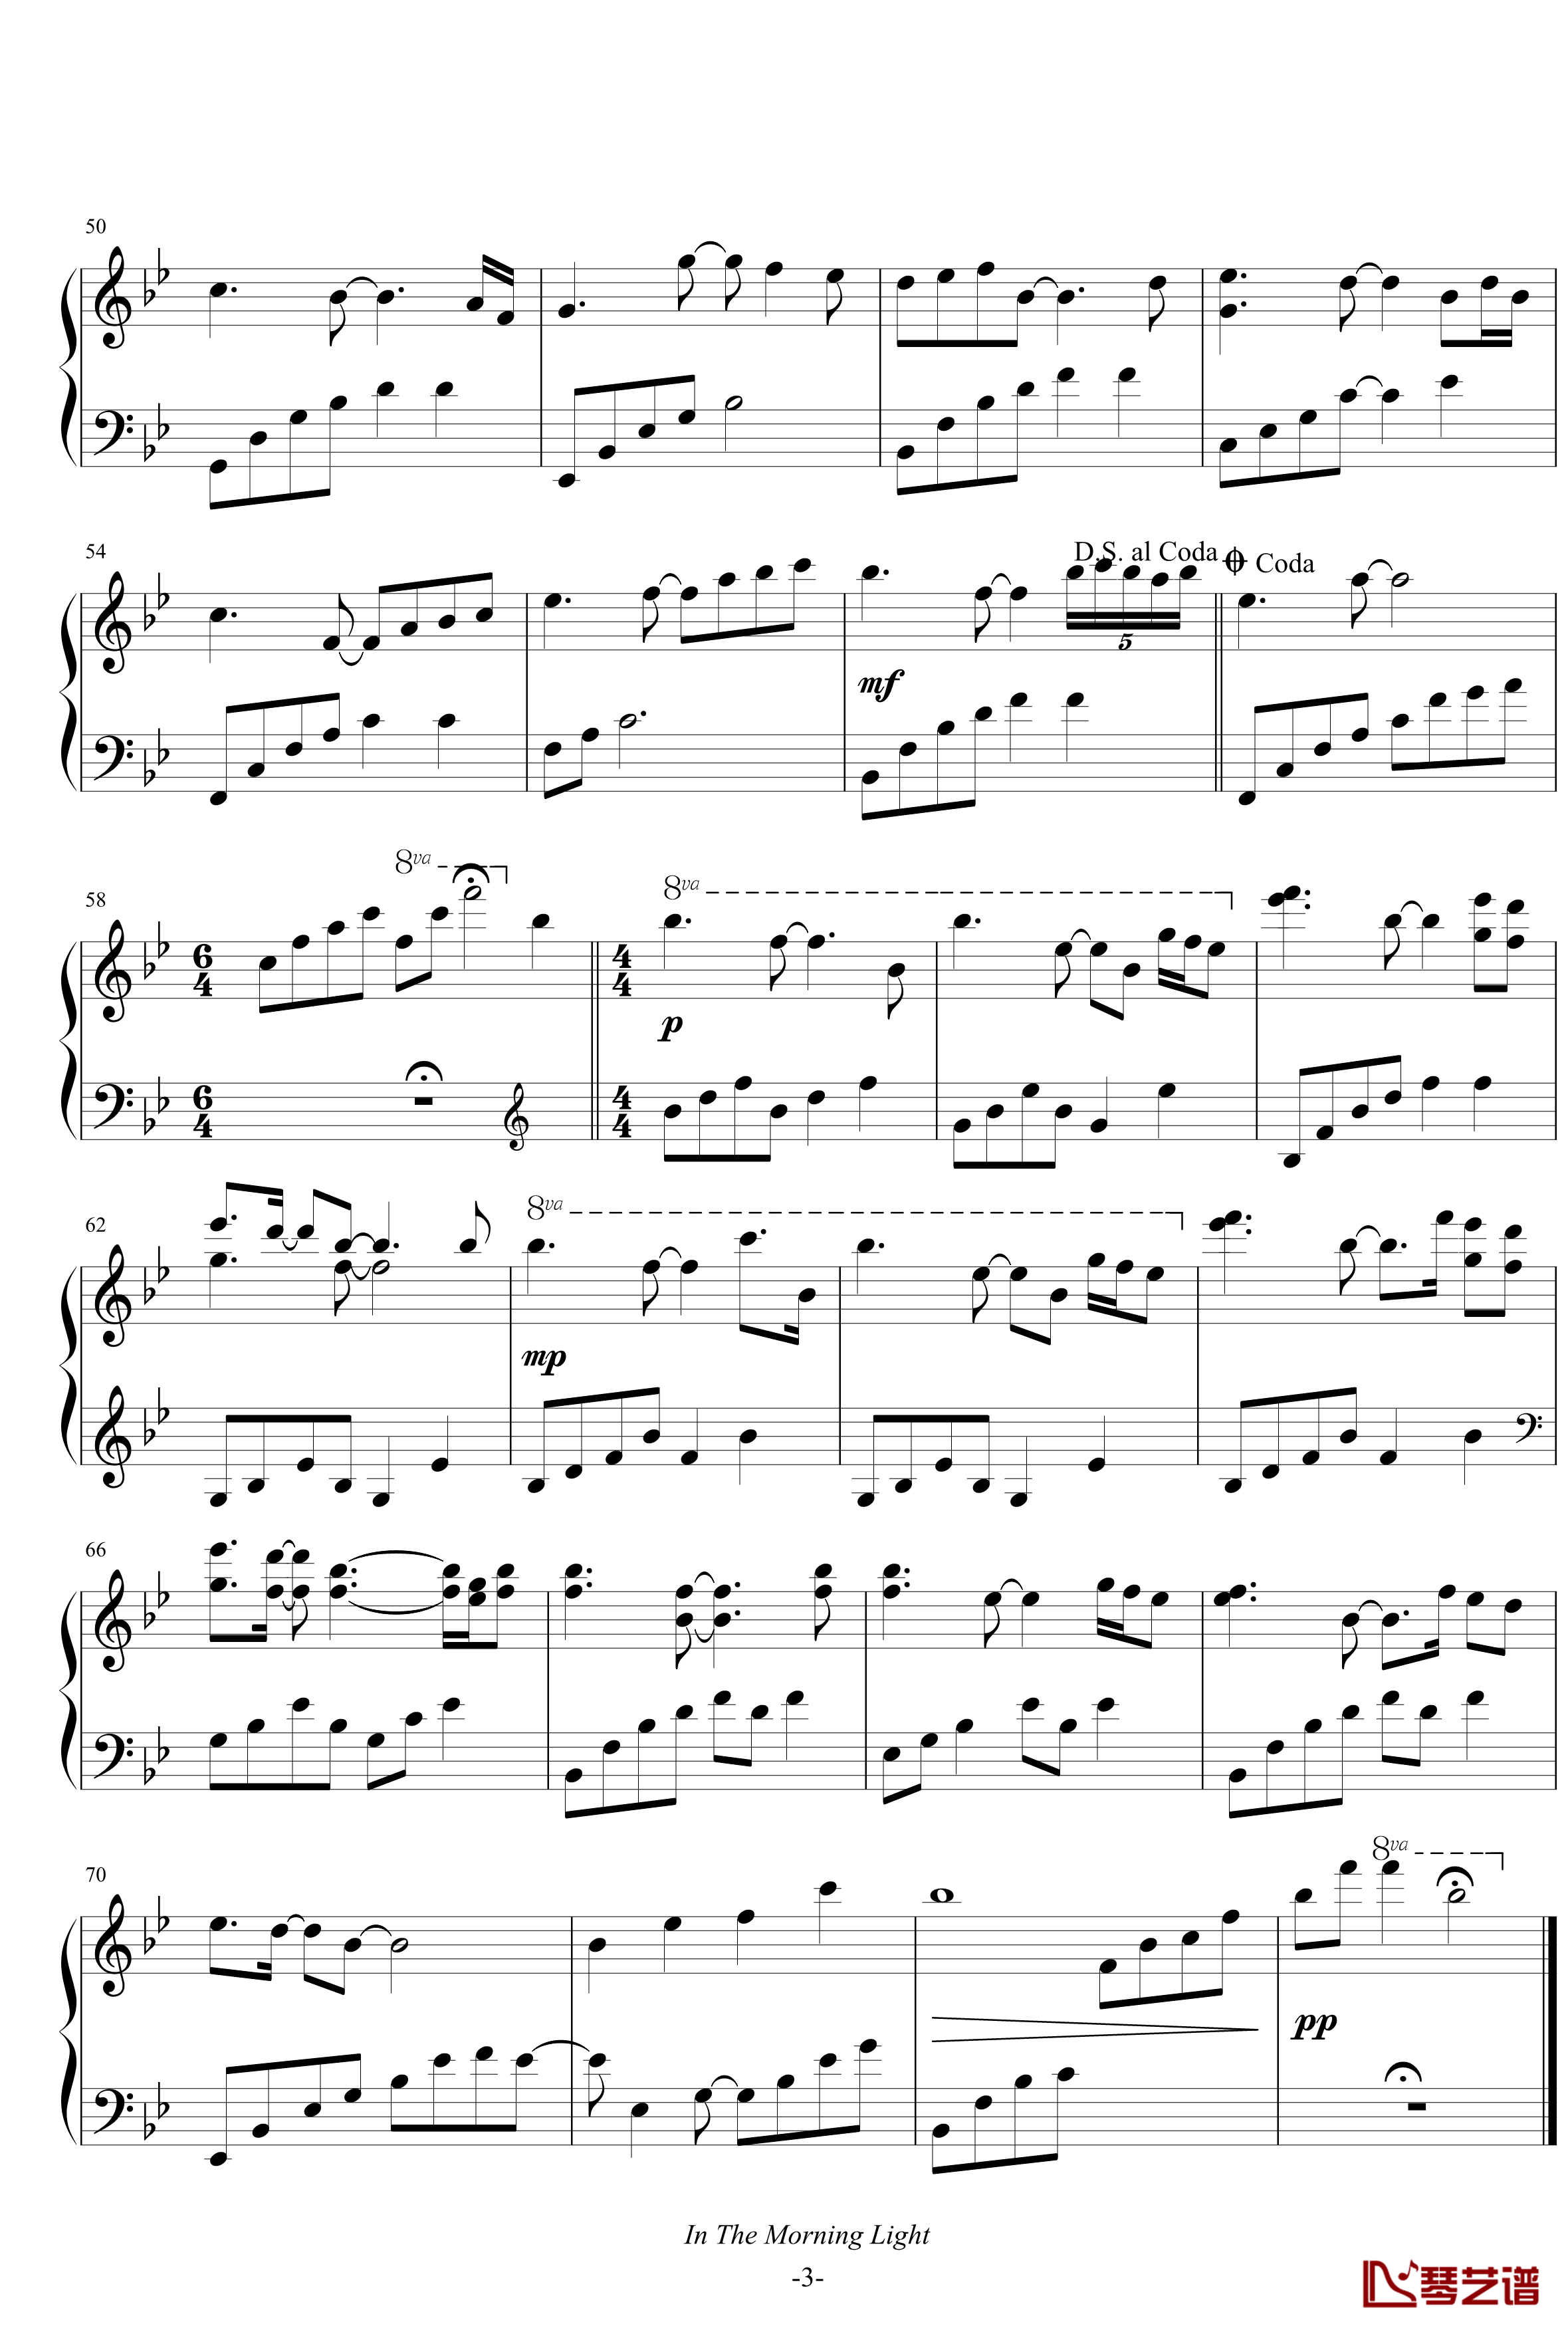 In the morning light钢琴谱-B-flat major-雅尼3